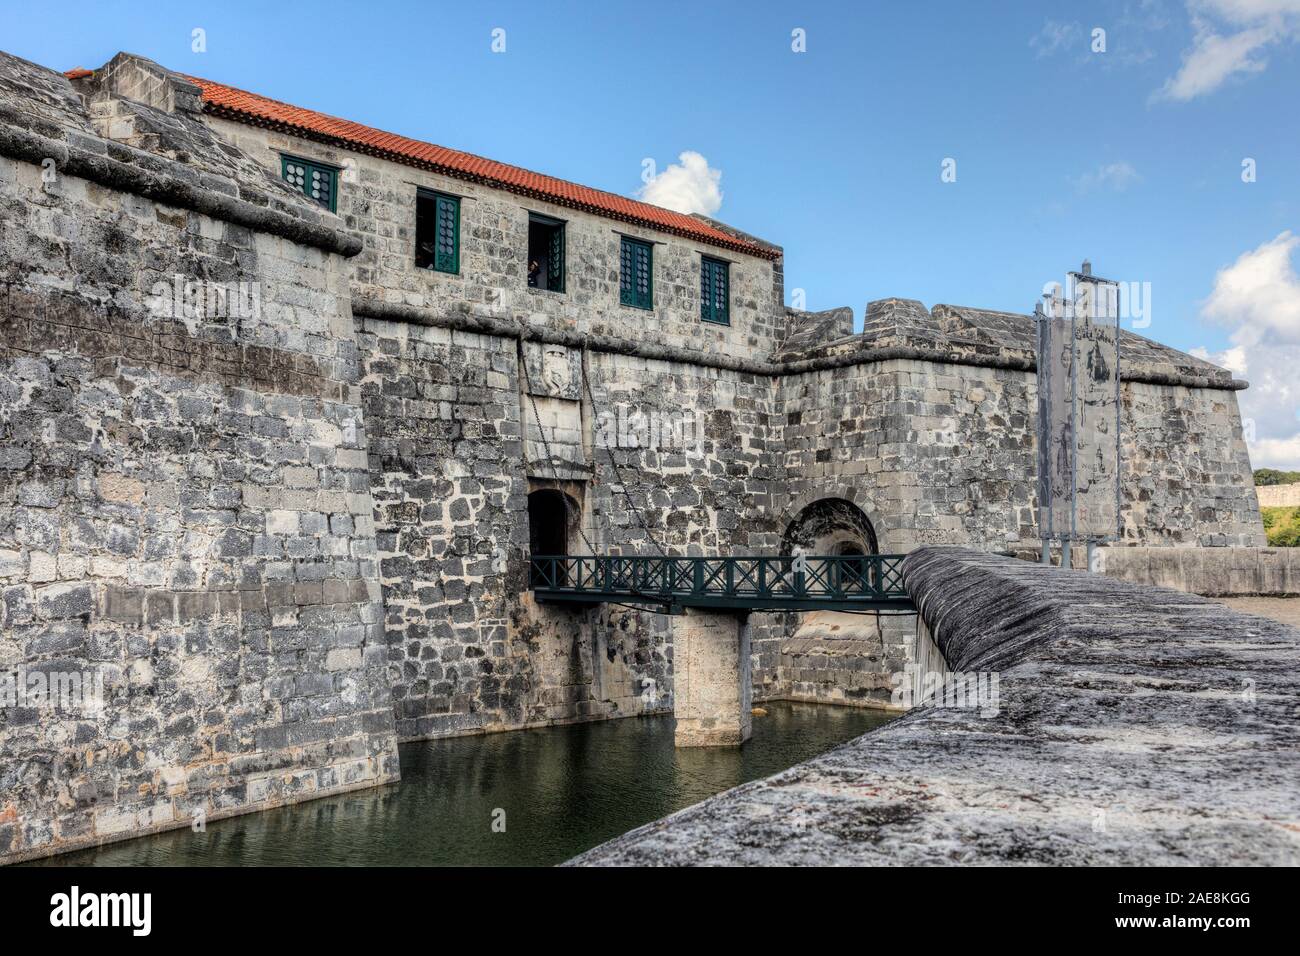 Castillo de la Real Fuerza, Old Havana, Cuba, North America Stock Photo